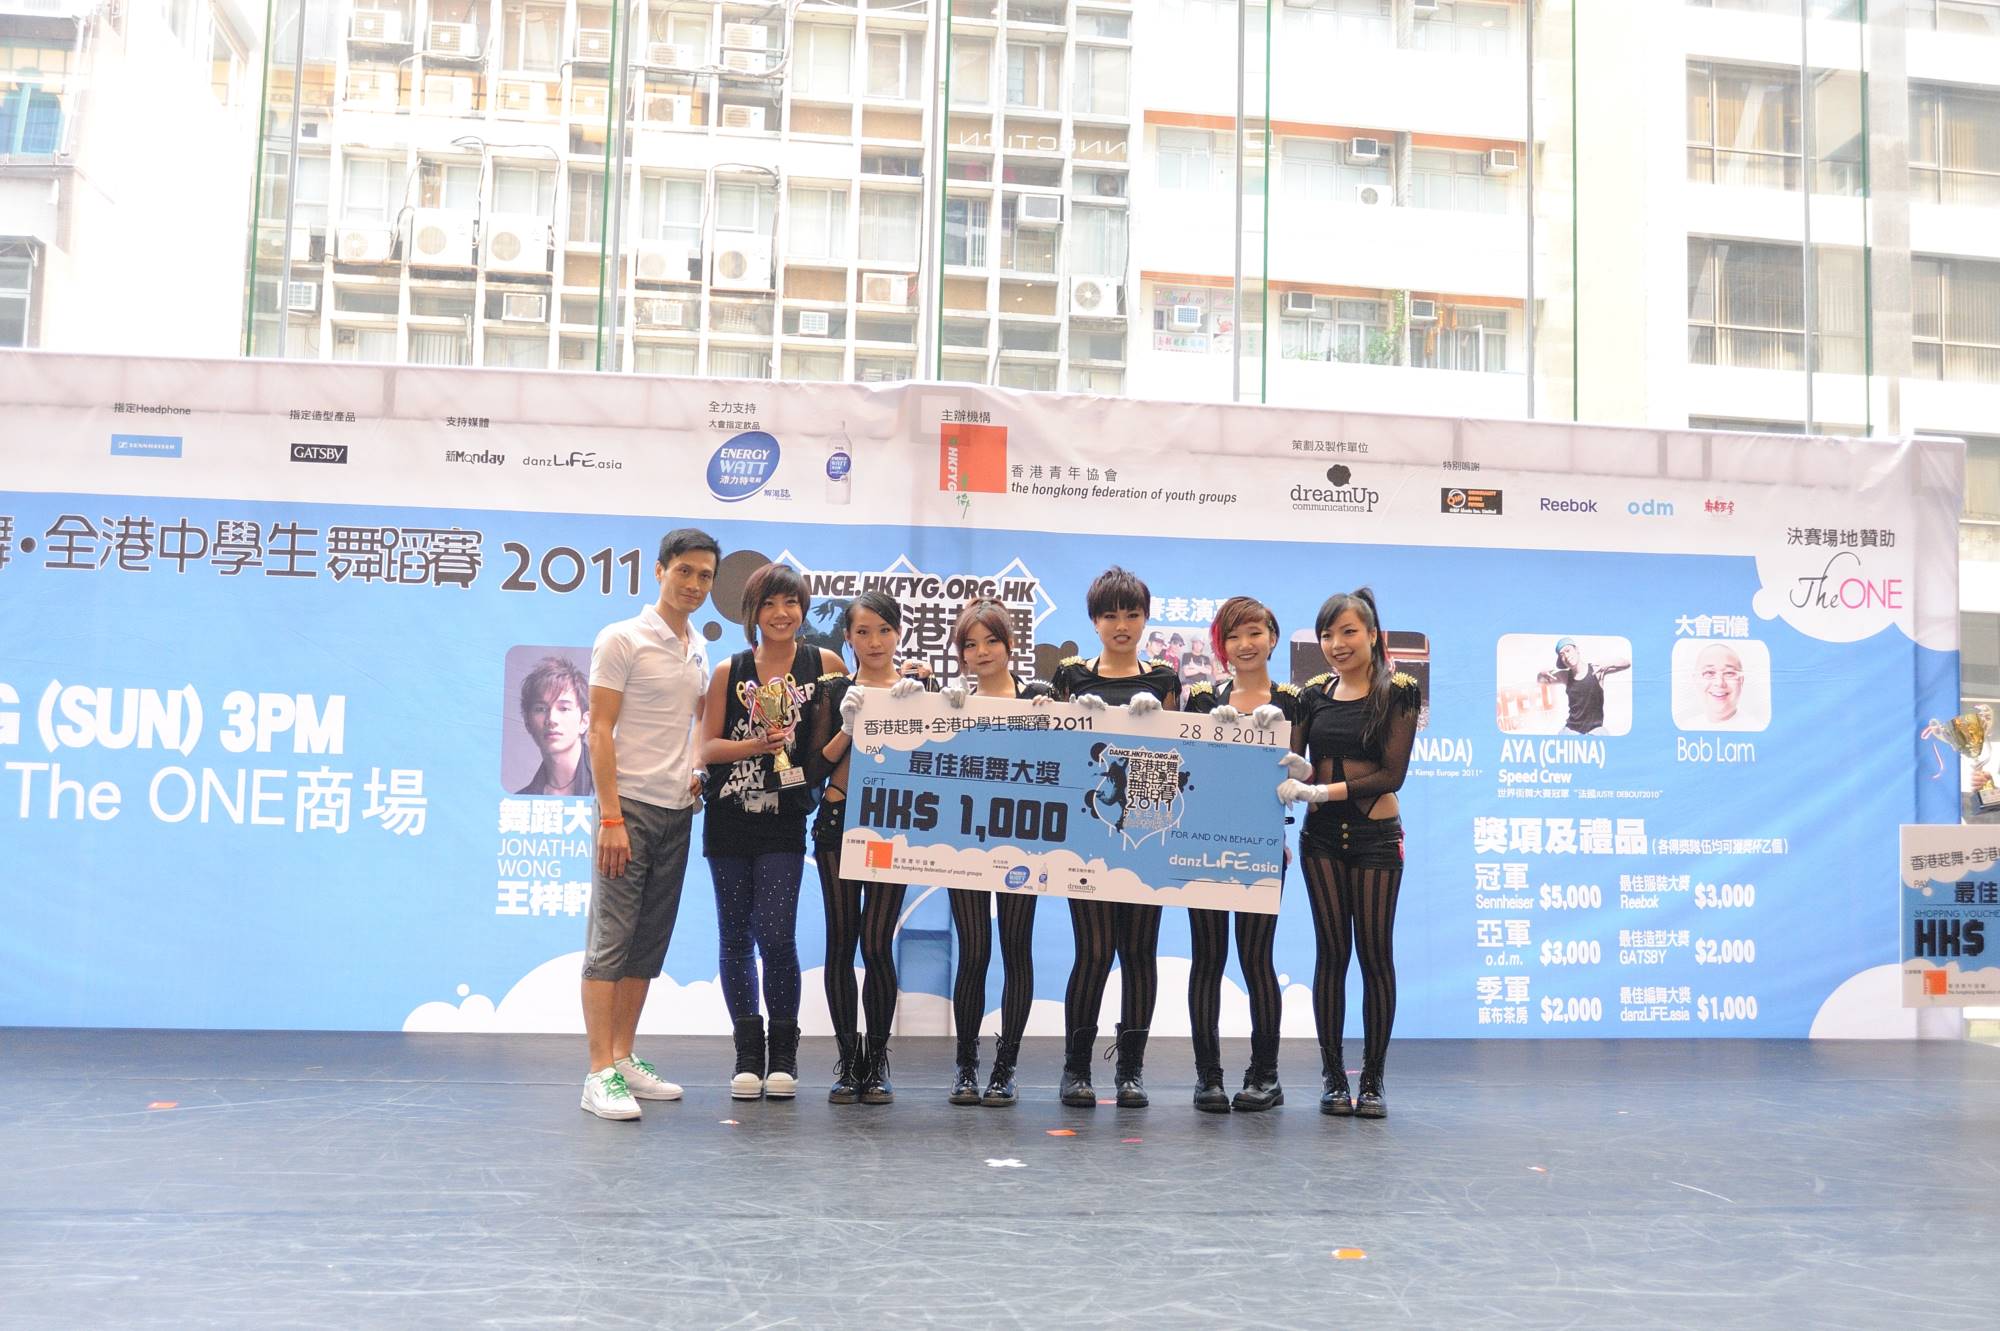 全港中學生舞蹈賽2011得獎隊伍 (3)